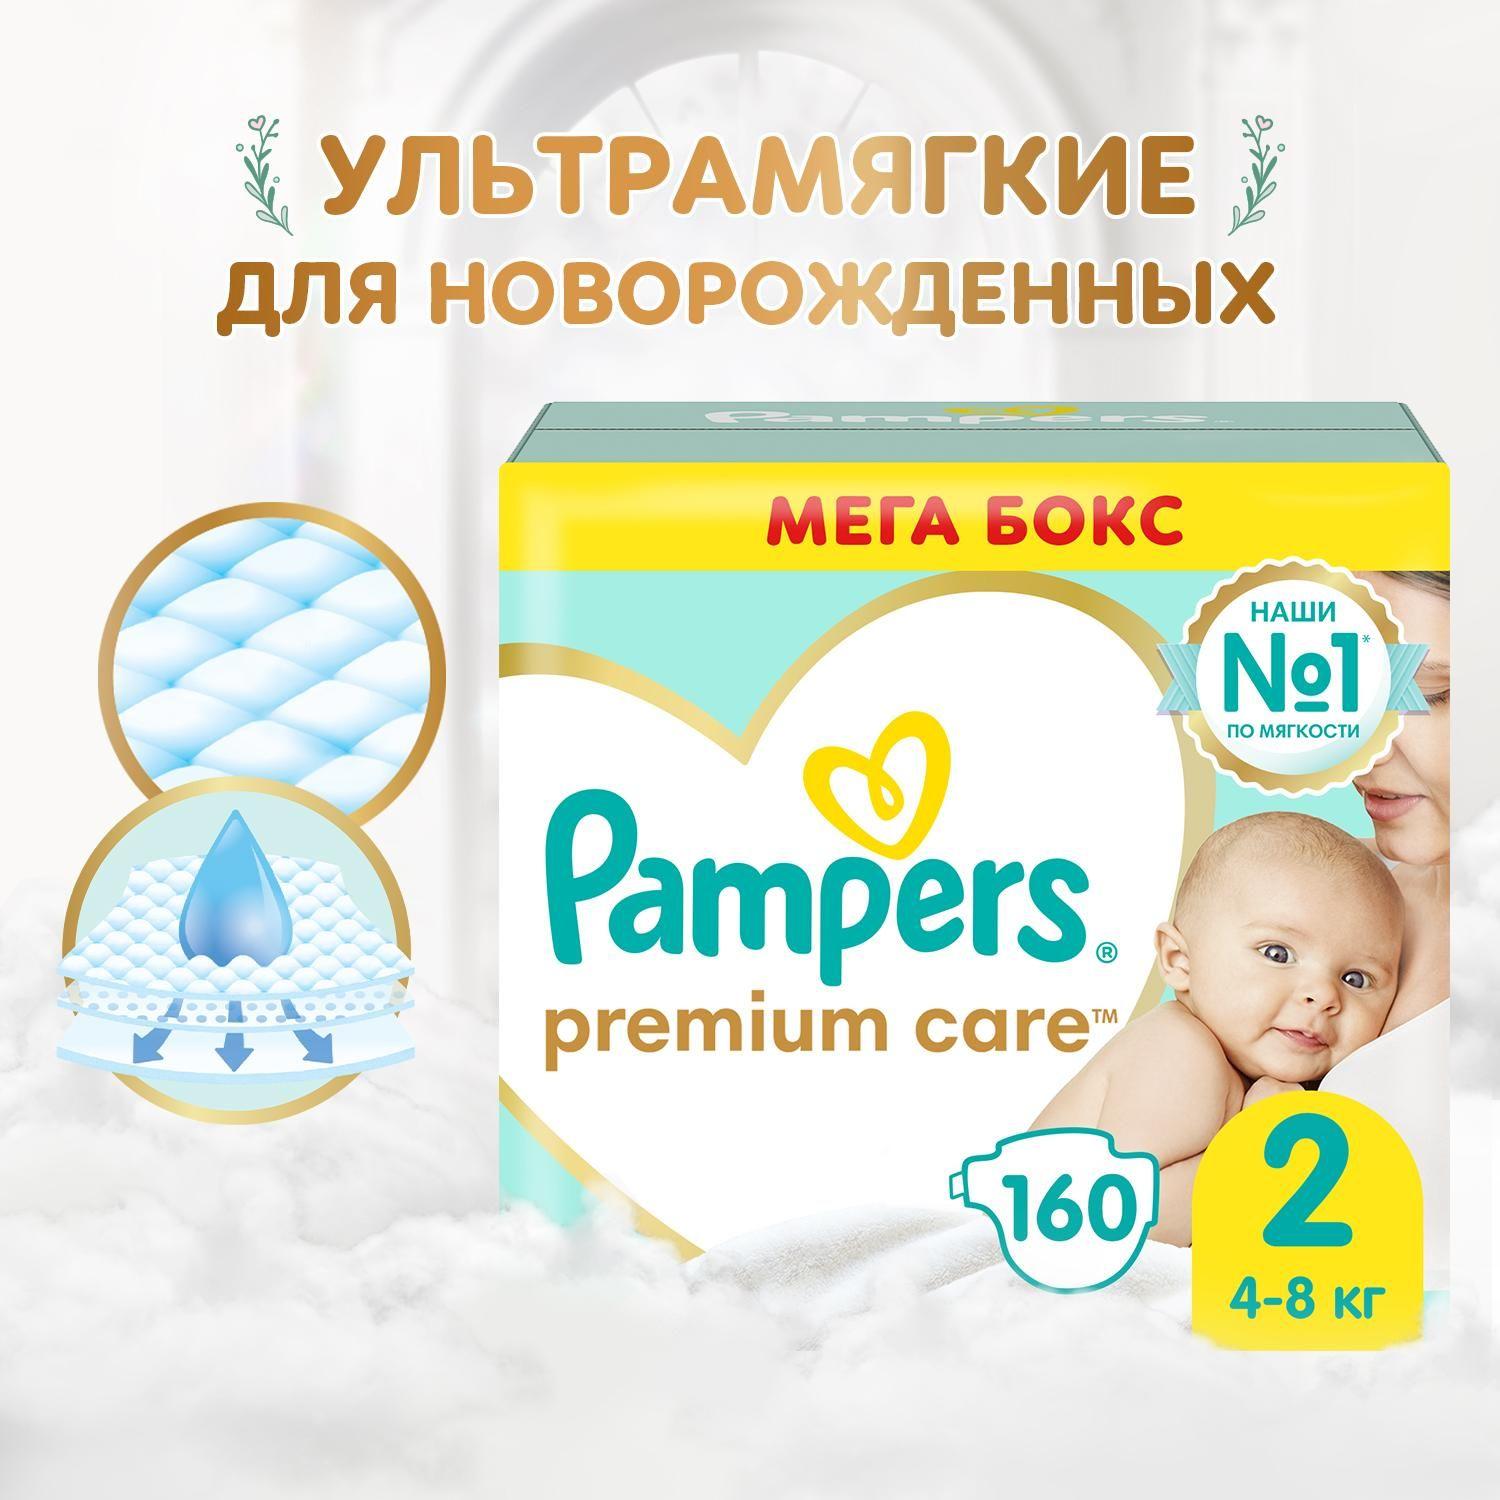 Подгузники для новорожденных Pampers Premium Care 2 размер, 4-8 кг, 160 шт, ультрамягкие